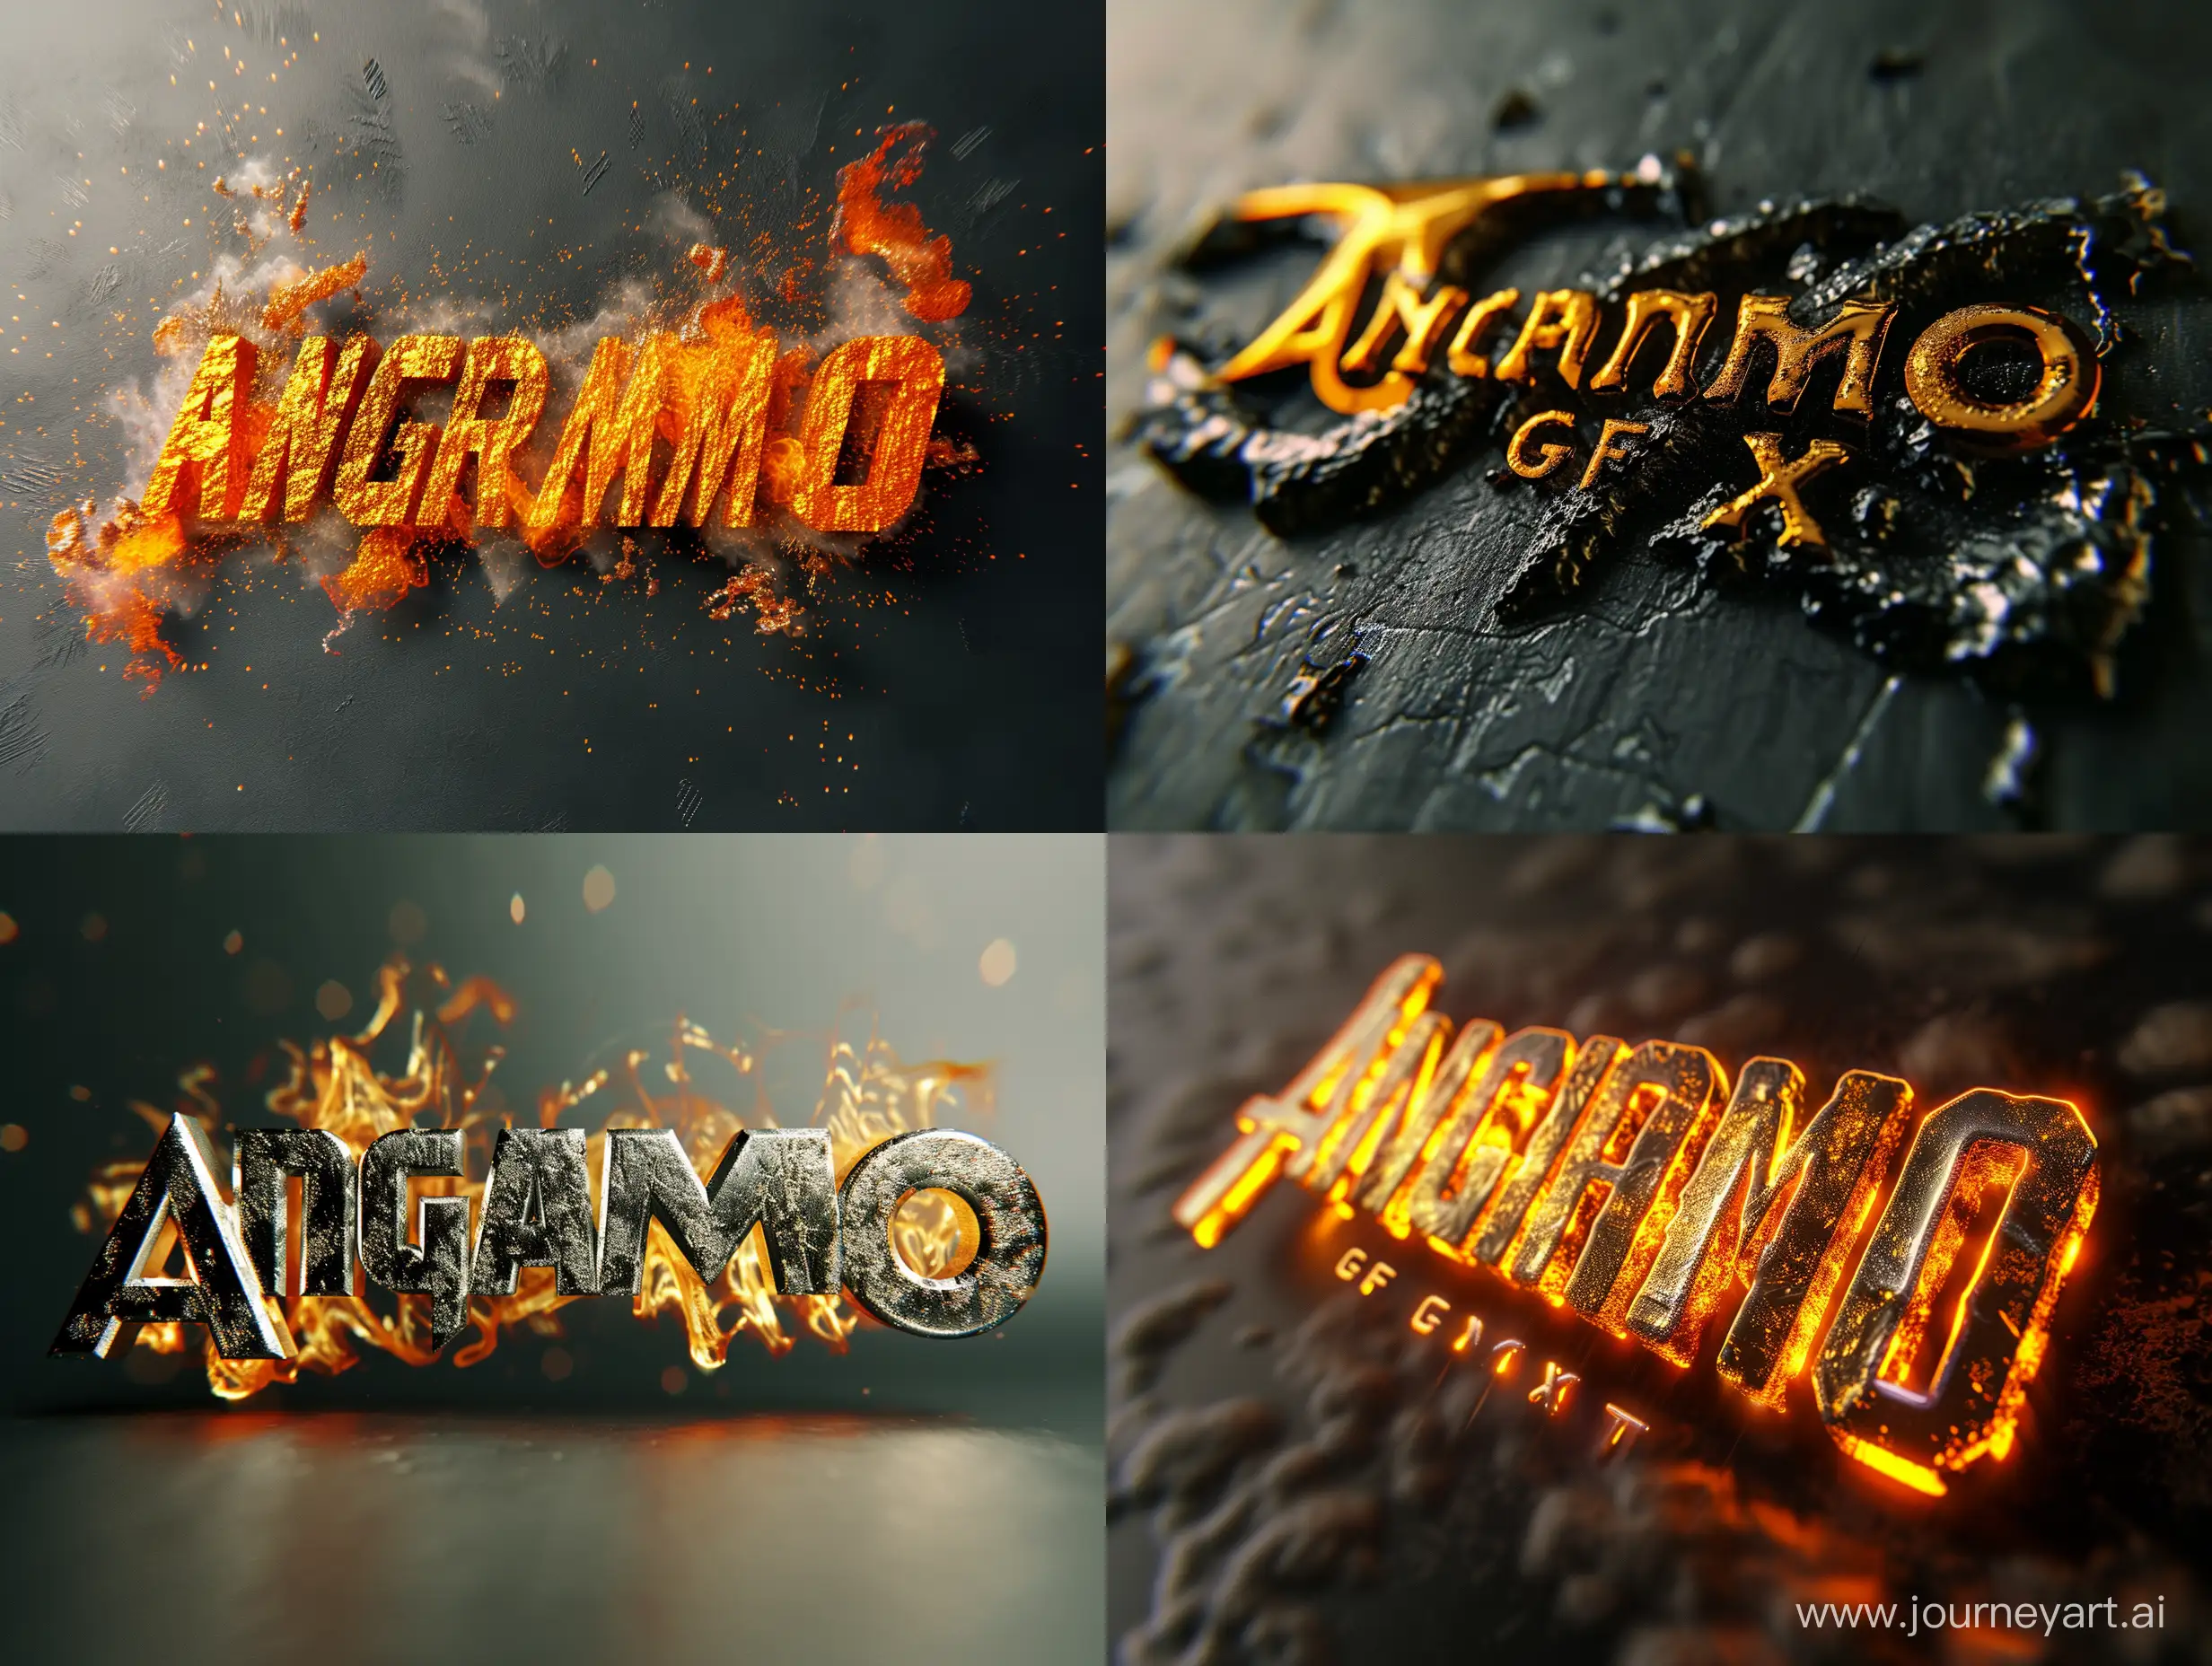 Hot, molten 3D metallic text titled "Angramo GFX"